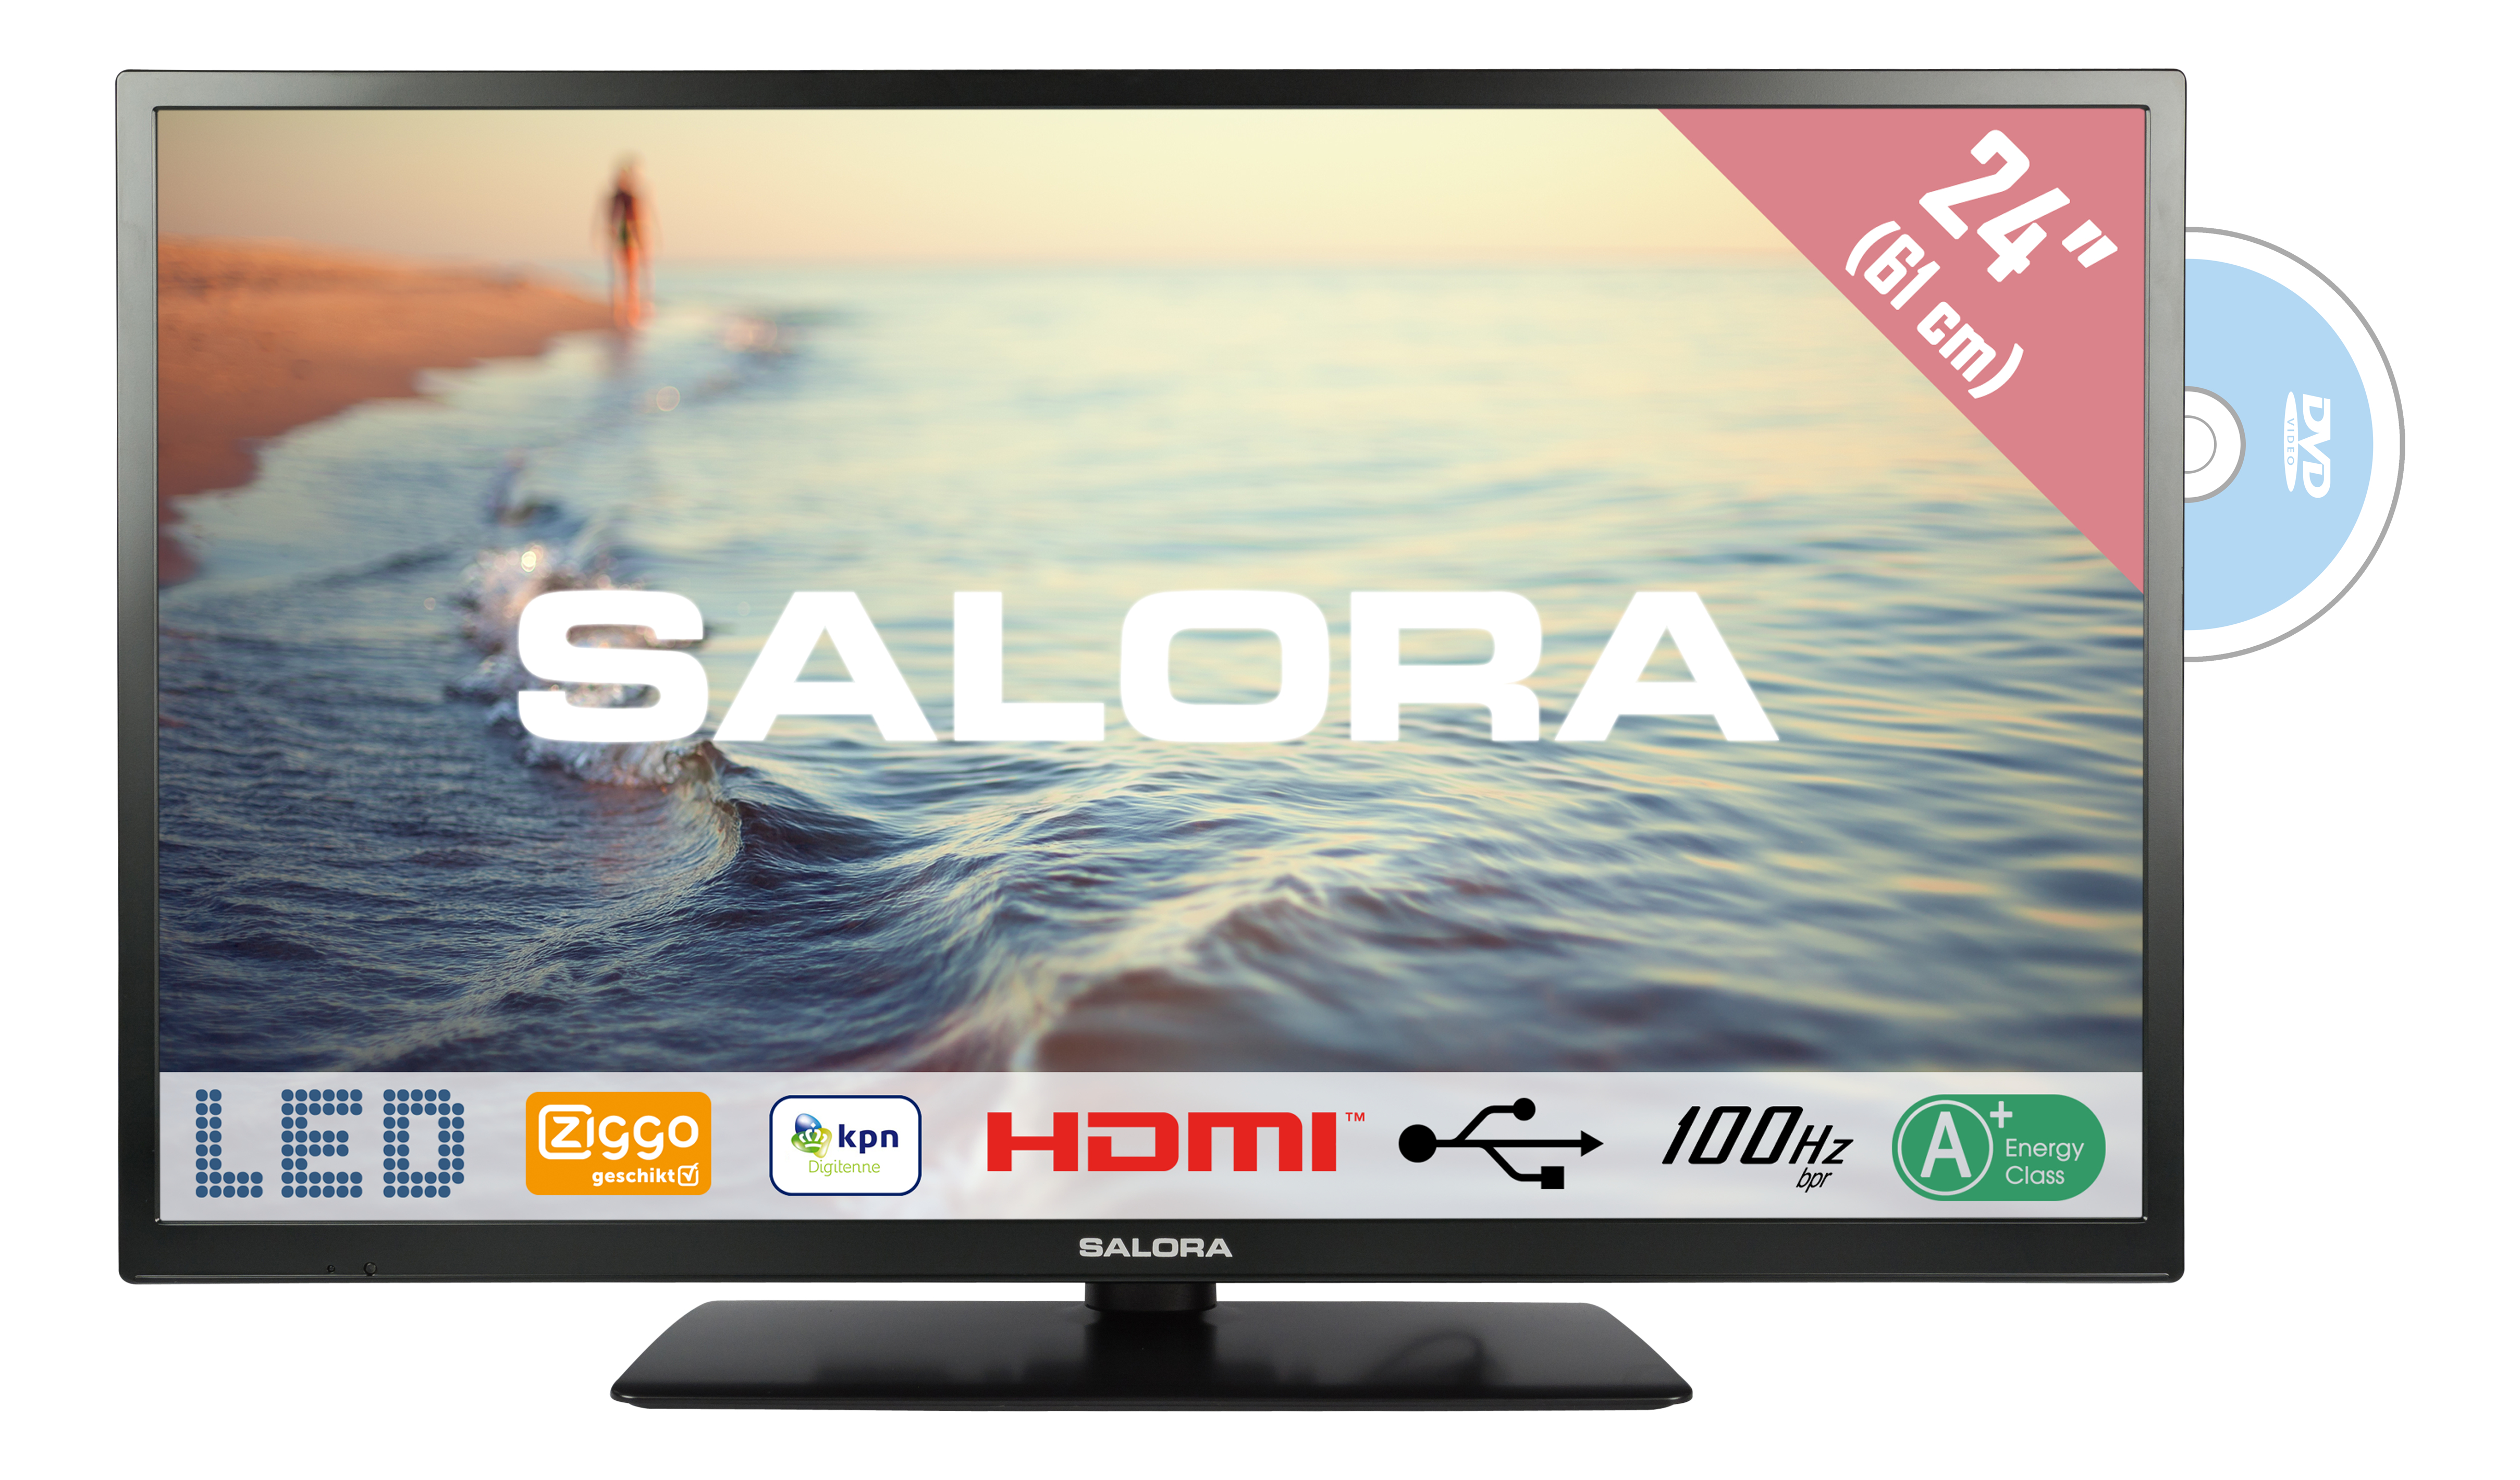 Salora 5000 series 24HDB5005 TV